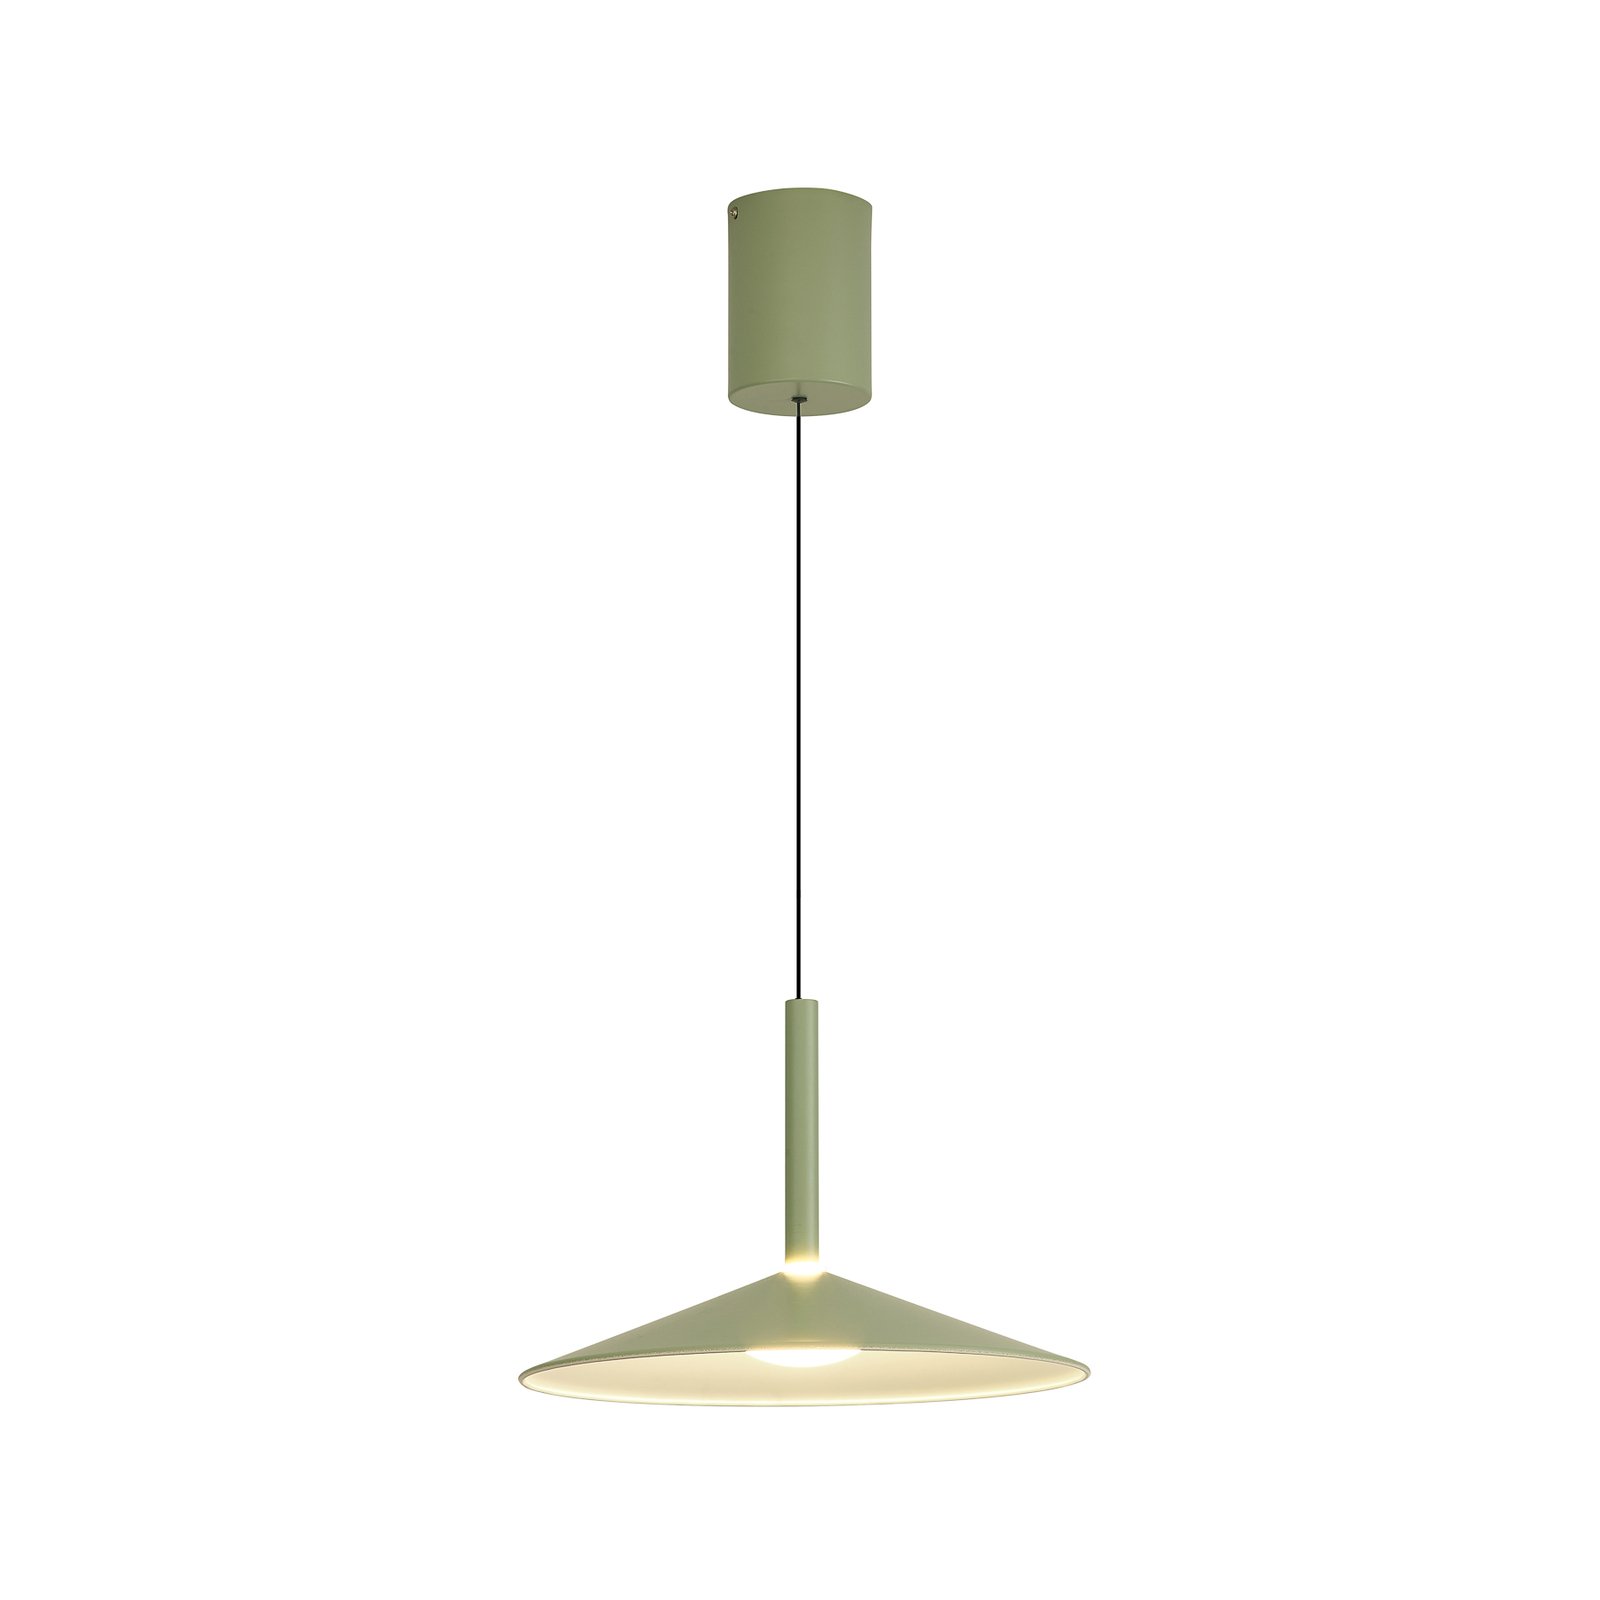 Calice hanglamp, groen, Ø 32 cm, in hoogte verstelbaar